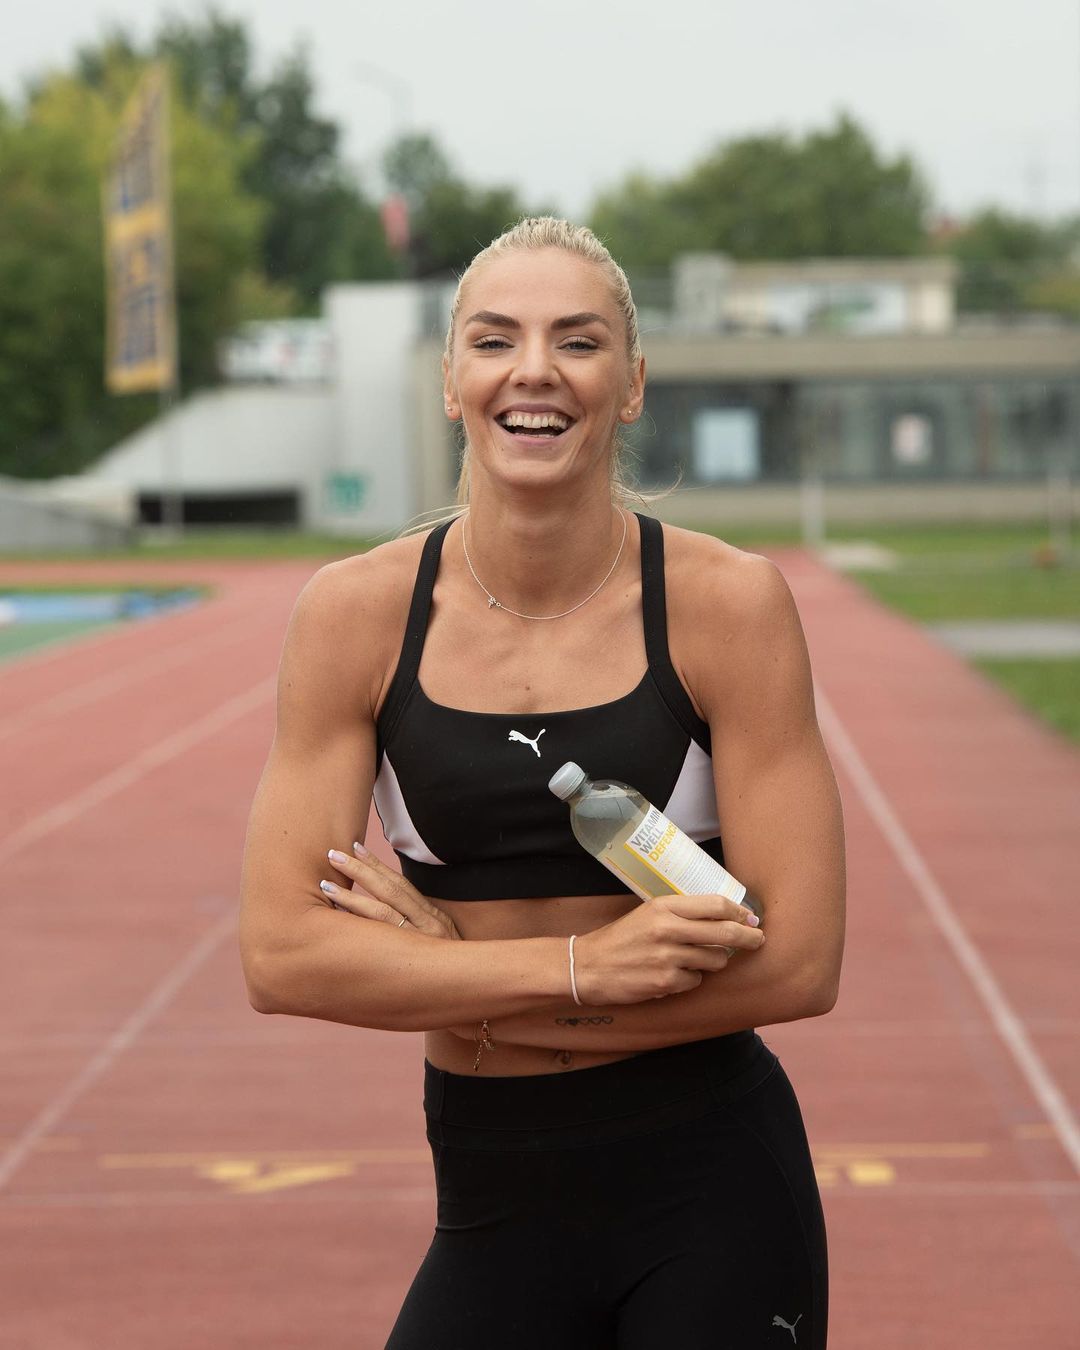 Ιβόνα Ντάντιτς: Η αθλήτρια του στίβου με το εκπληκτικό σώμα που εντυπωσιάζει εντός και εκτός αγωνιστικού χώρου